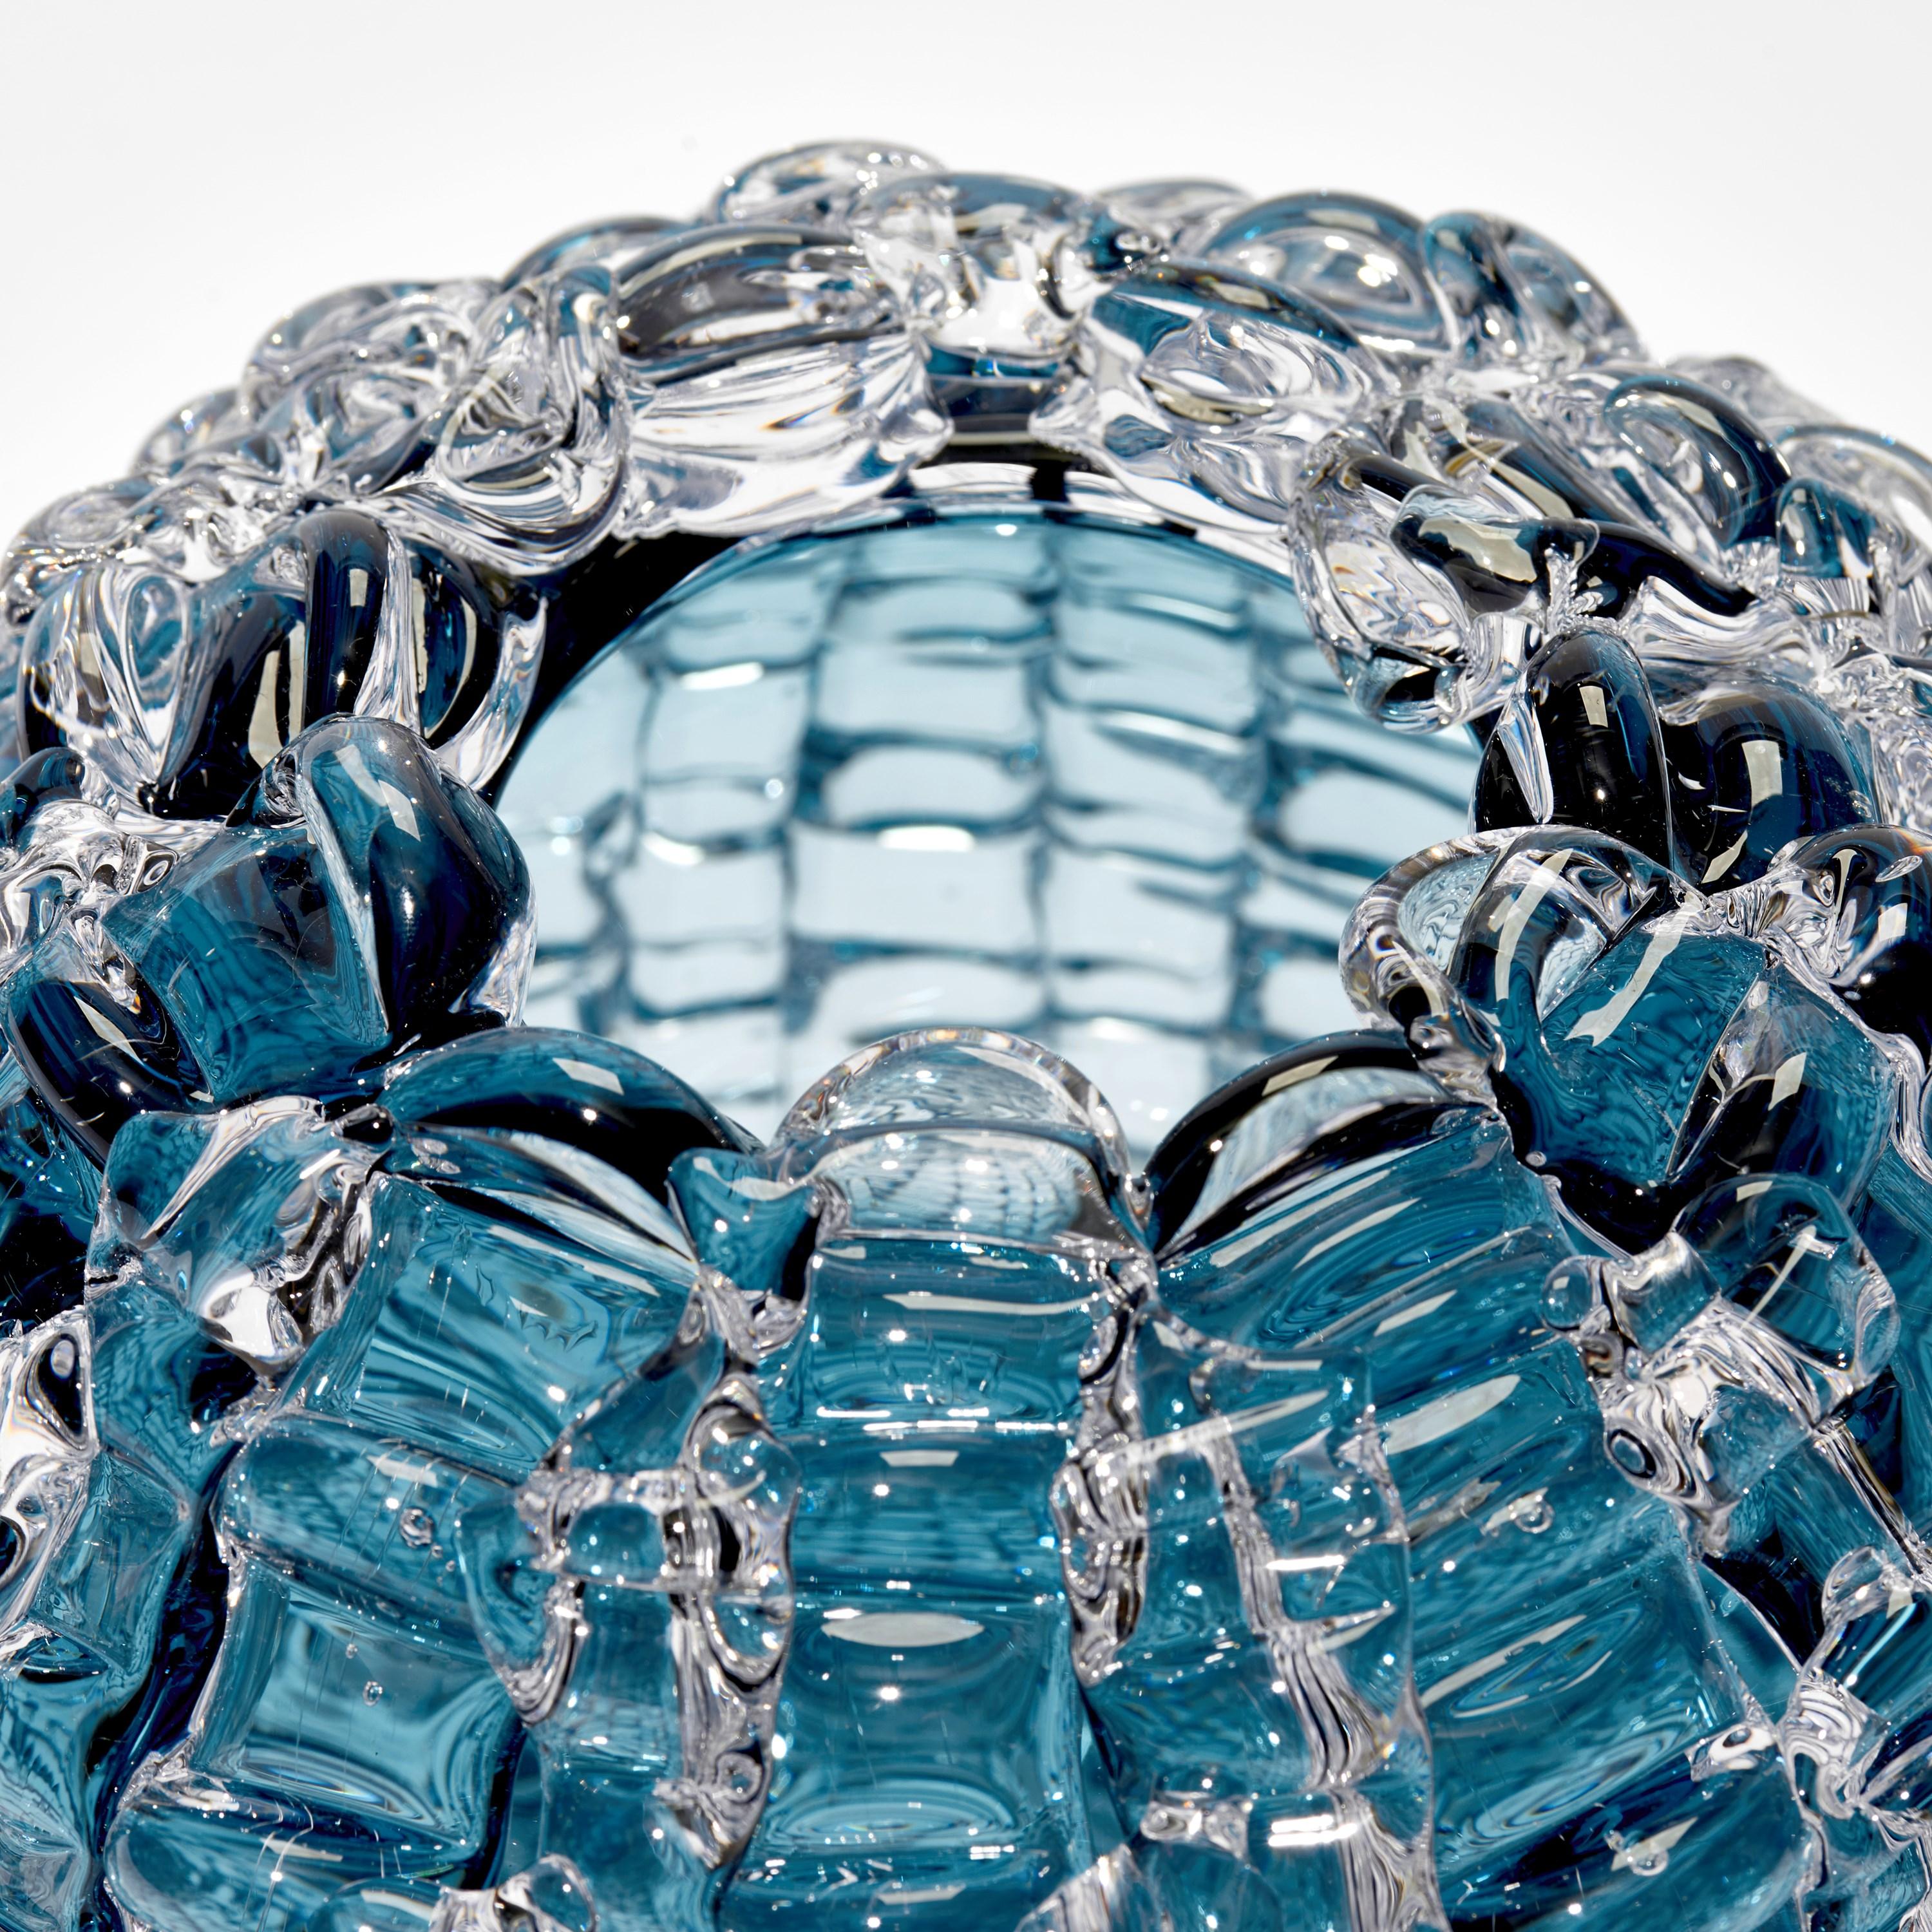 British Echinus in Aqua, a Blue Glass Centrepiece & Sculpture by Katherine Huskie